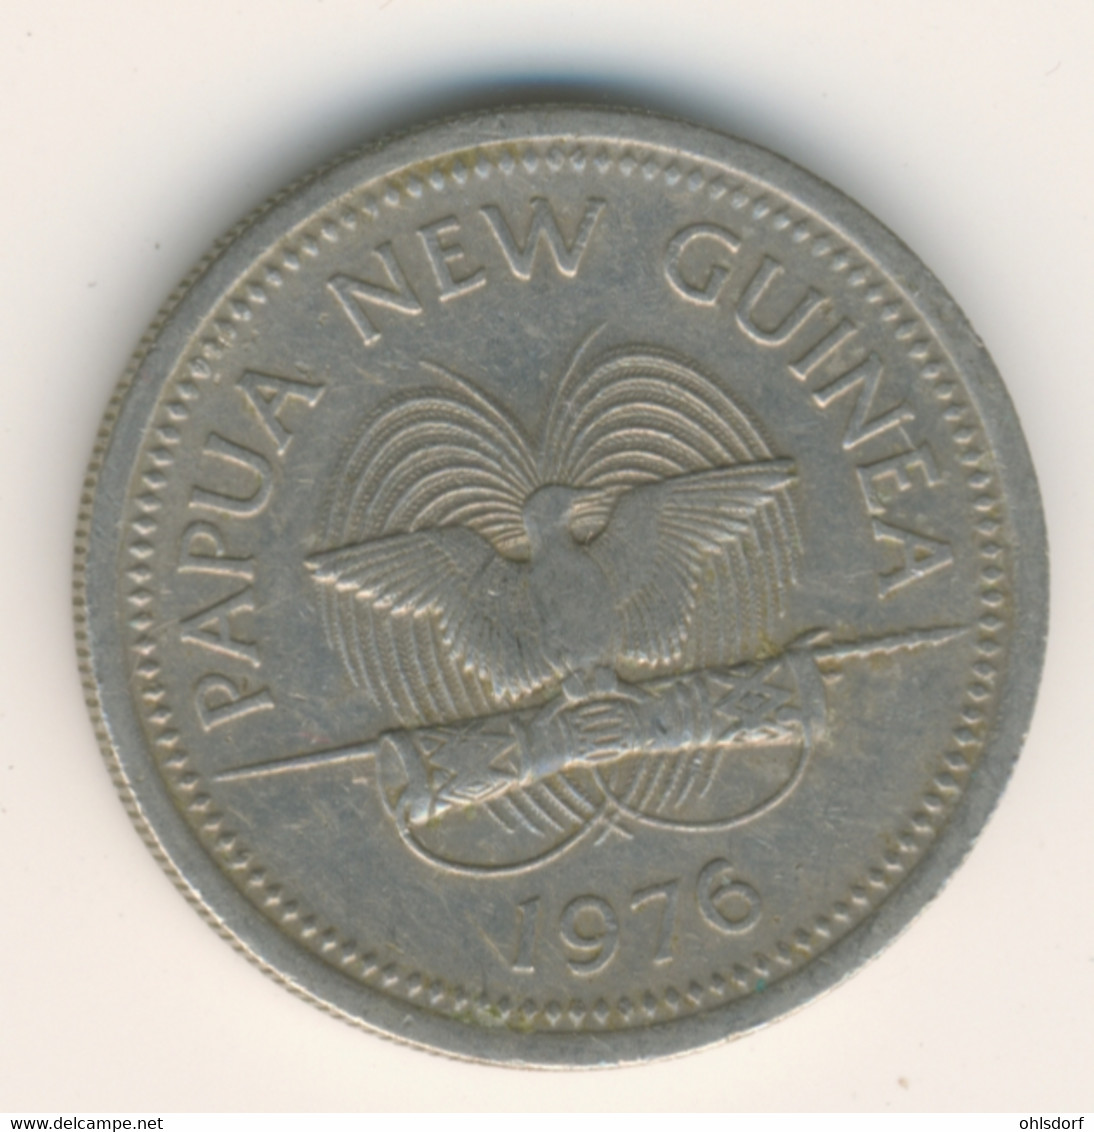 PAPUA NEW GUINEA 1976: 10 Toea, KM 4 - Papouasie-Nouvelle-Guinée